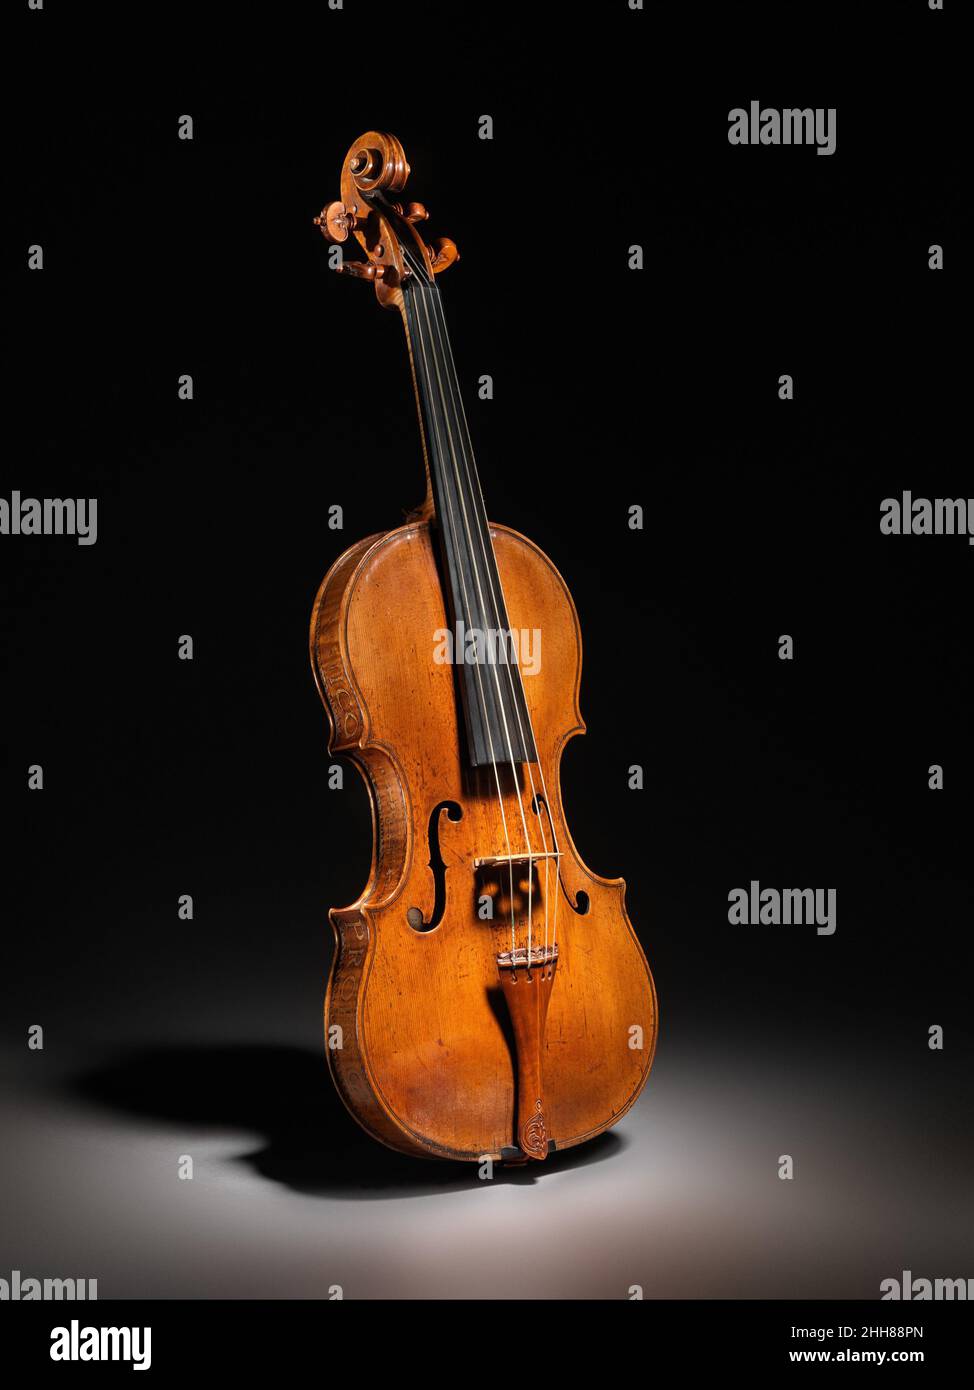 Ex 'Kurtz' Violine ca. 1560 Andrea Amati der Italiener Andrea Amati, der älteste der großen kremonesischen Geigenbauer, hat die elegante Form der Geige definiert und den Maßstab für hervorragende Handwerkskunst gesetzt, der auch das Werk seiner Anhänger kennzeichnet, Zu denen zwei seiner Söhne und sein angesehener Enkel Nicolò sowie Antonio Stradivari gehörten. Zu den Sammlungen des Museums gehören mehrere Violinen von Nicolò Amati und Stradivari, aber dieses viel ältere und seltenere Instrument veranschaulicht auf schöne Weise den Ursprung der bekannten Form der Geige in der Renaissance.der Ahornboden und die Zargen sind verziert Stockfoto